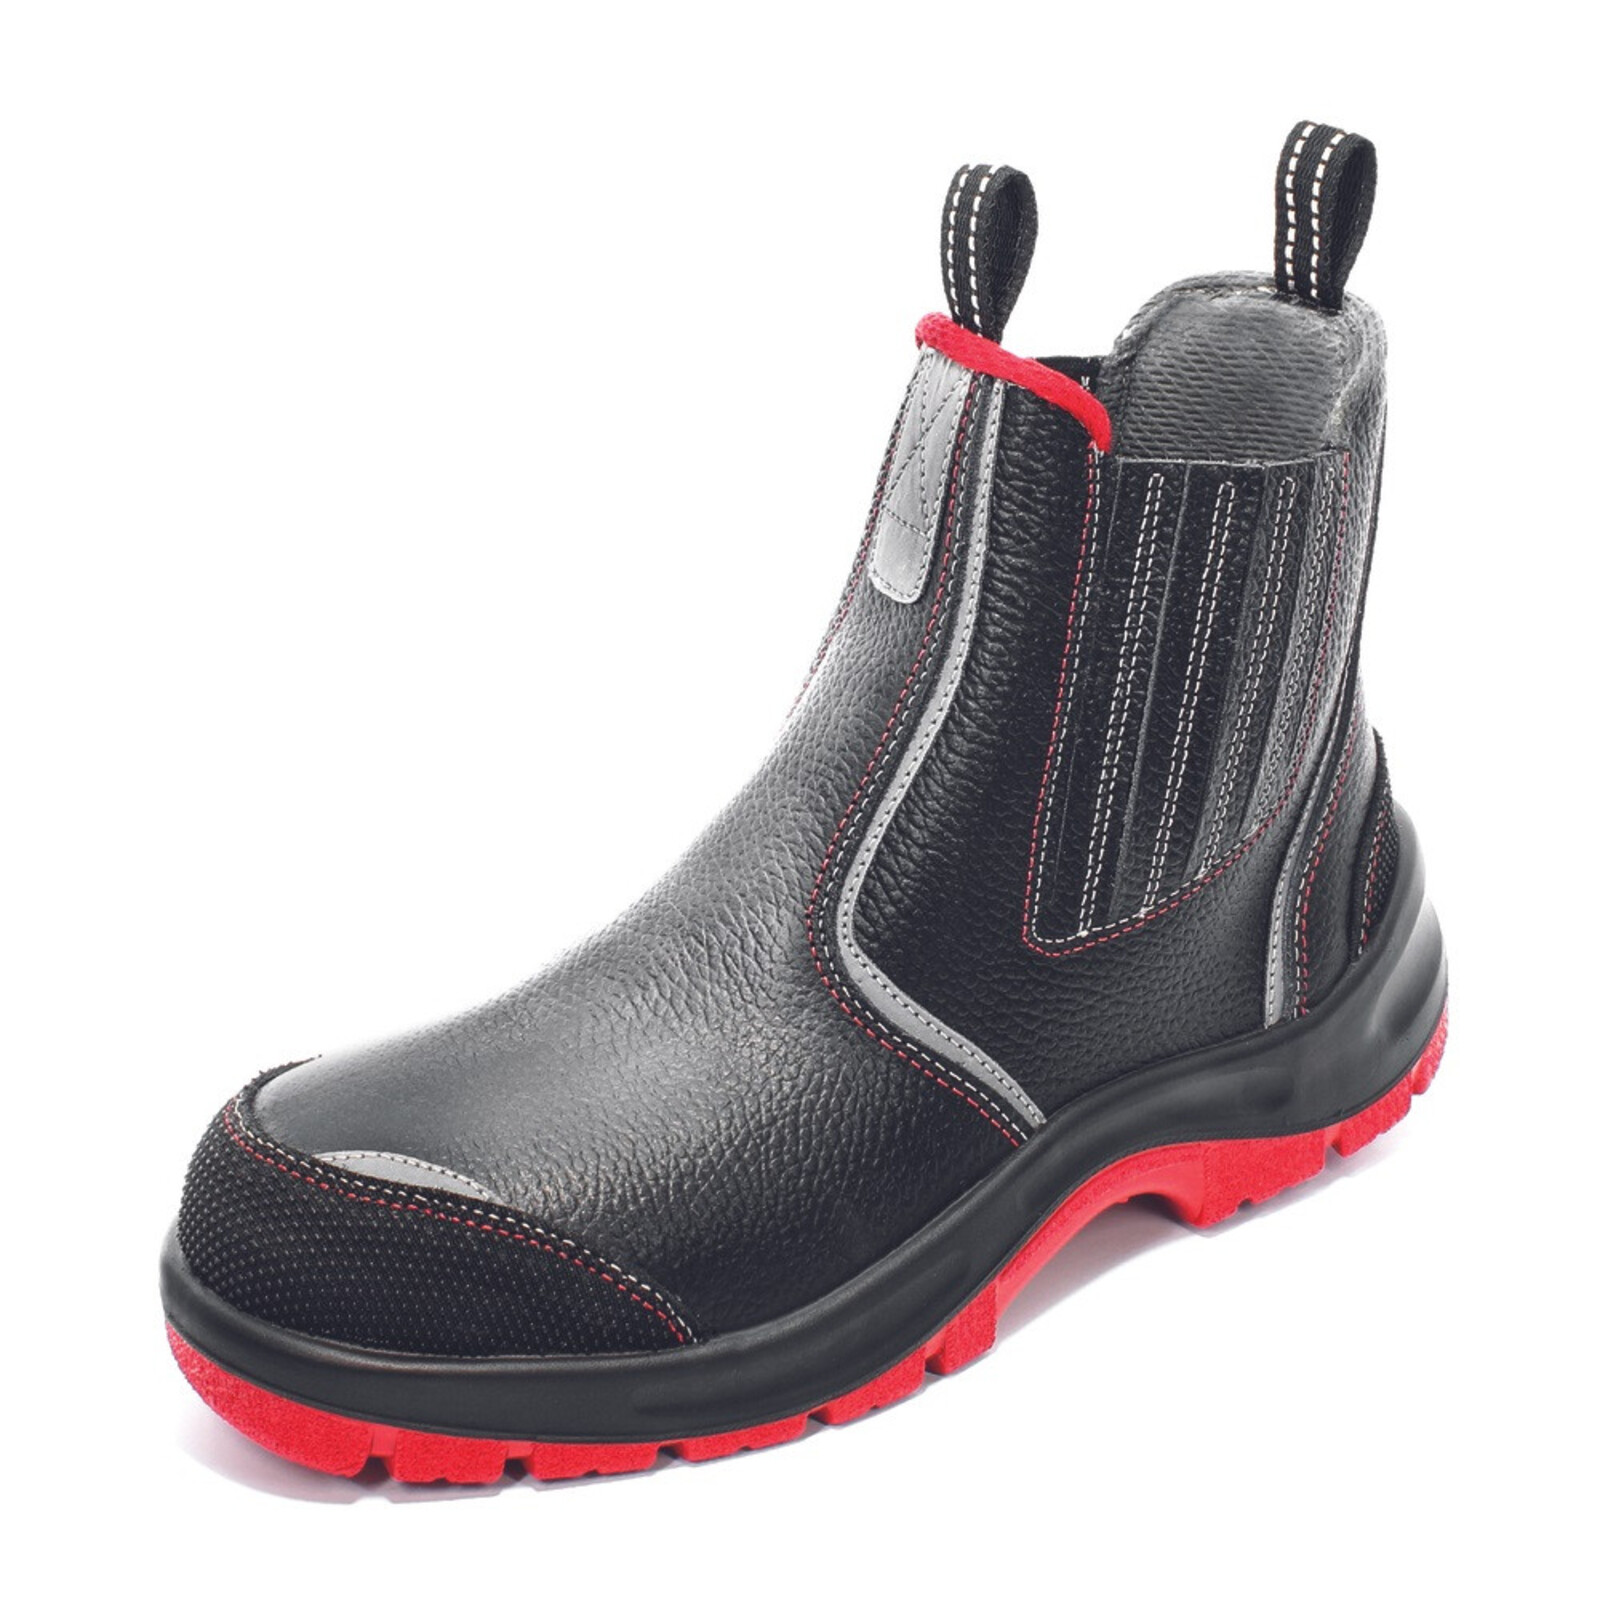 Bezpečnostná členková obuv Panda Strong Nuovo Eurotech MF S3 SRC - veľkosť: 41, farba: čierna/červená